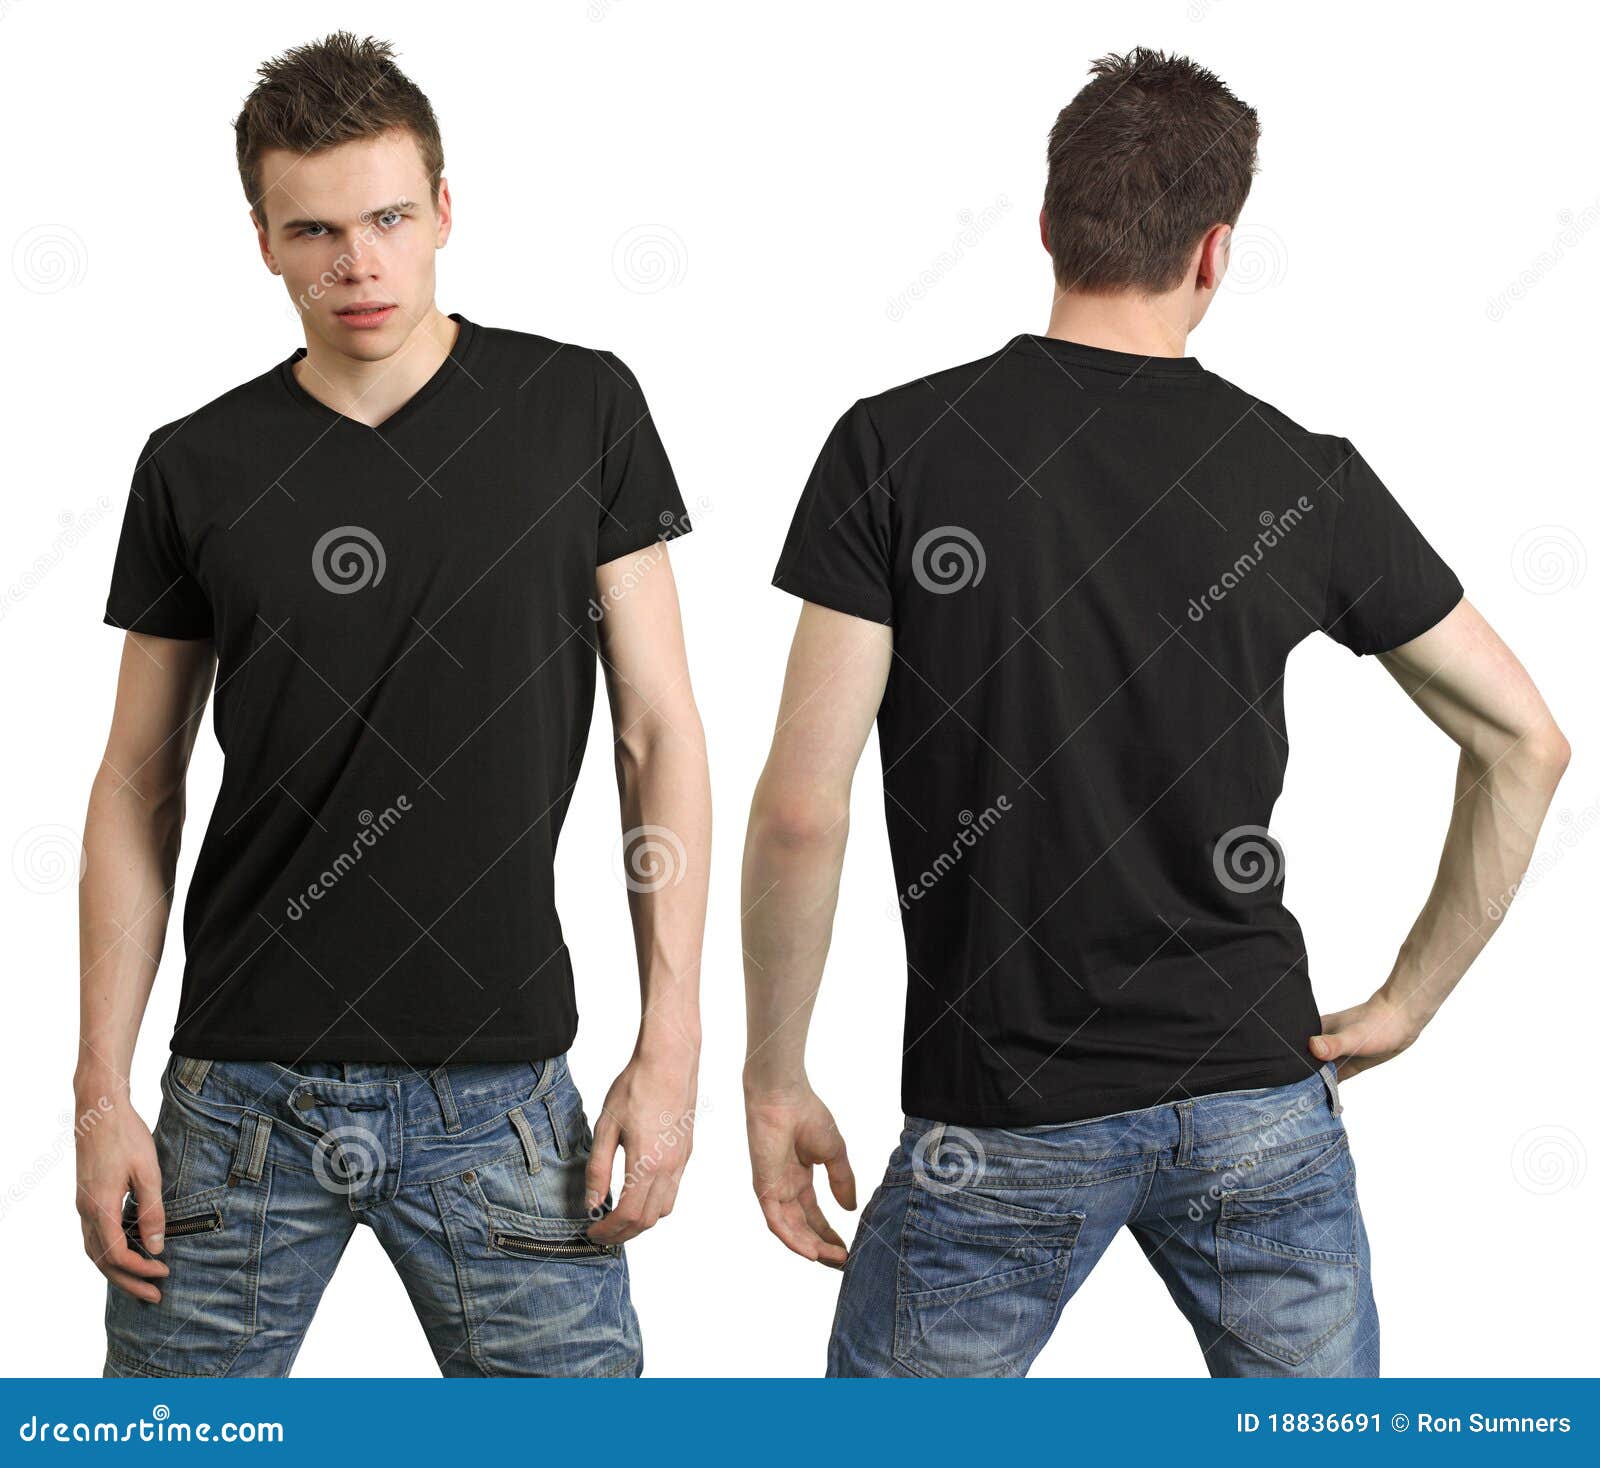 Camiseta Negra Se Burla Del Collage De Camisetas Negras De Hombre Y Mujer  Aislado En Fondo Blanco Foto de archivo - Imagen de adolescente, hombre:  174449142